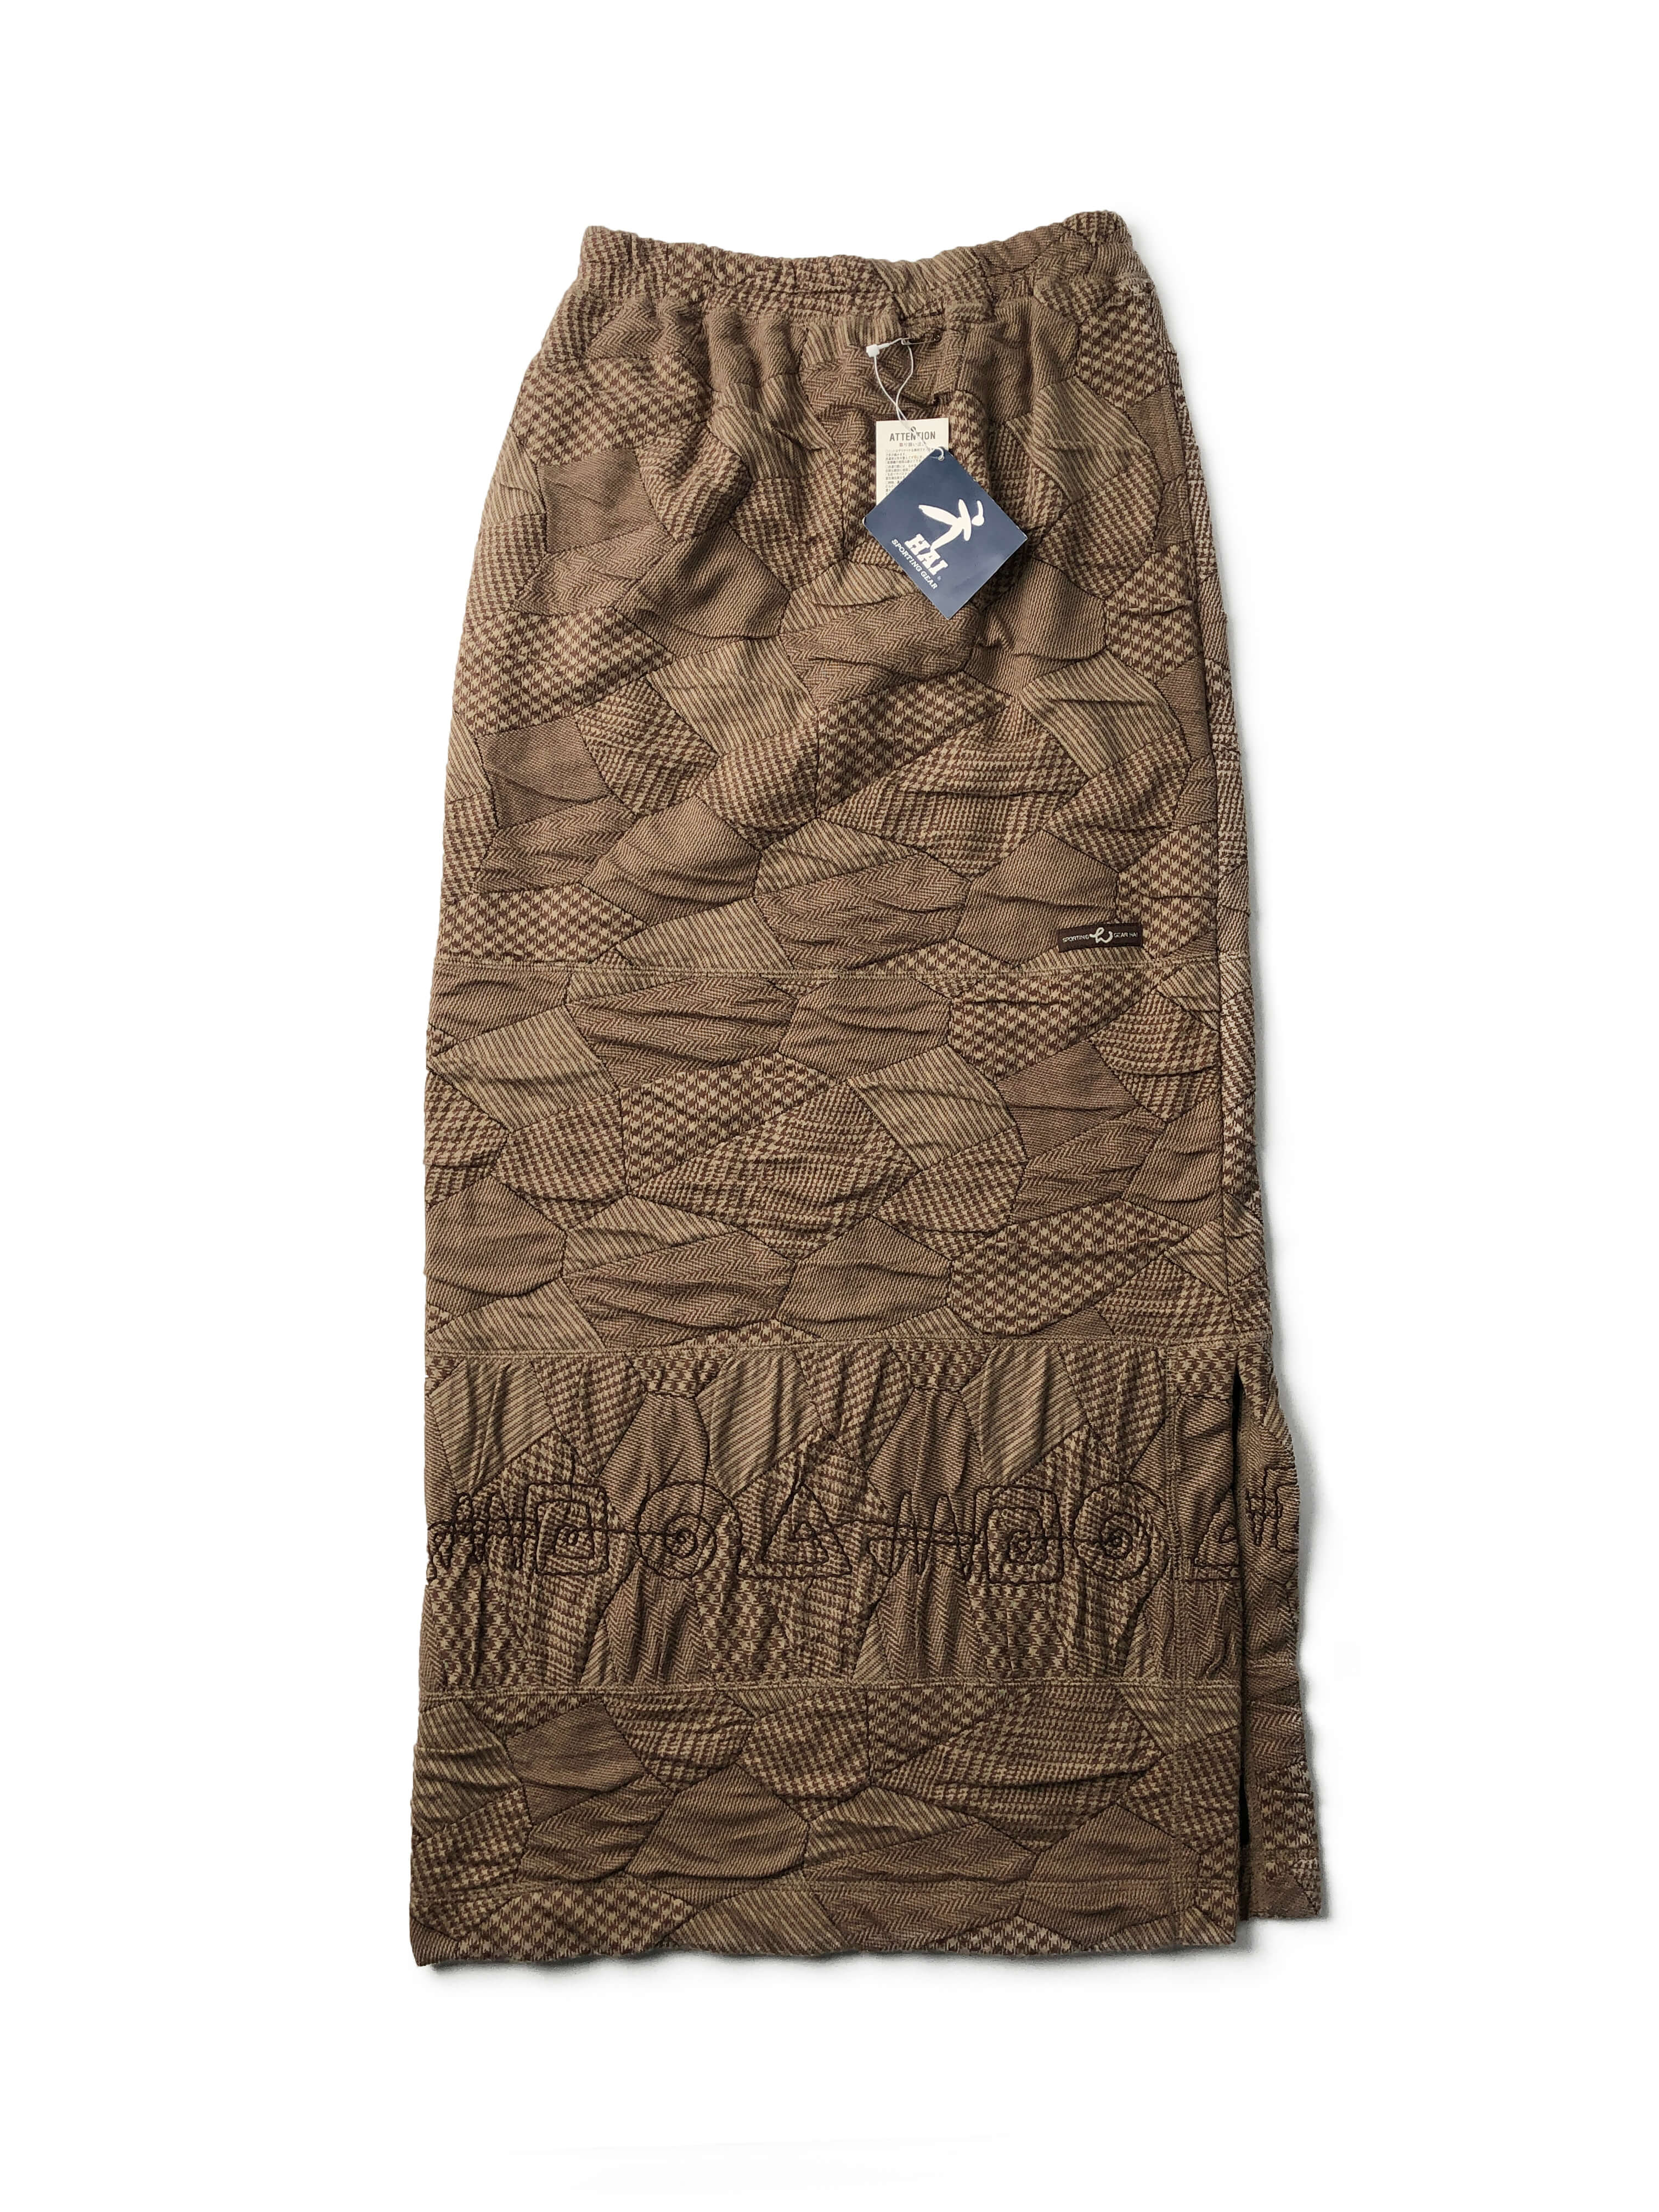 HAI SPORTING GEAR 90s full textile skirt